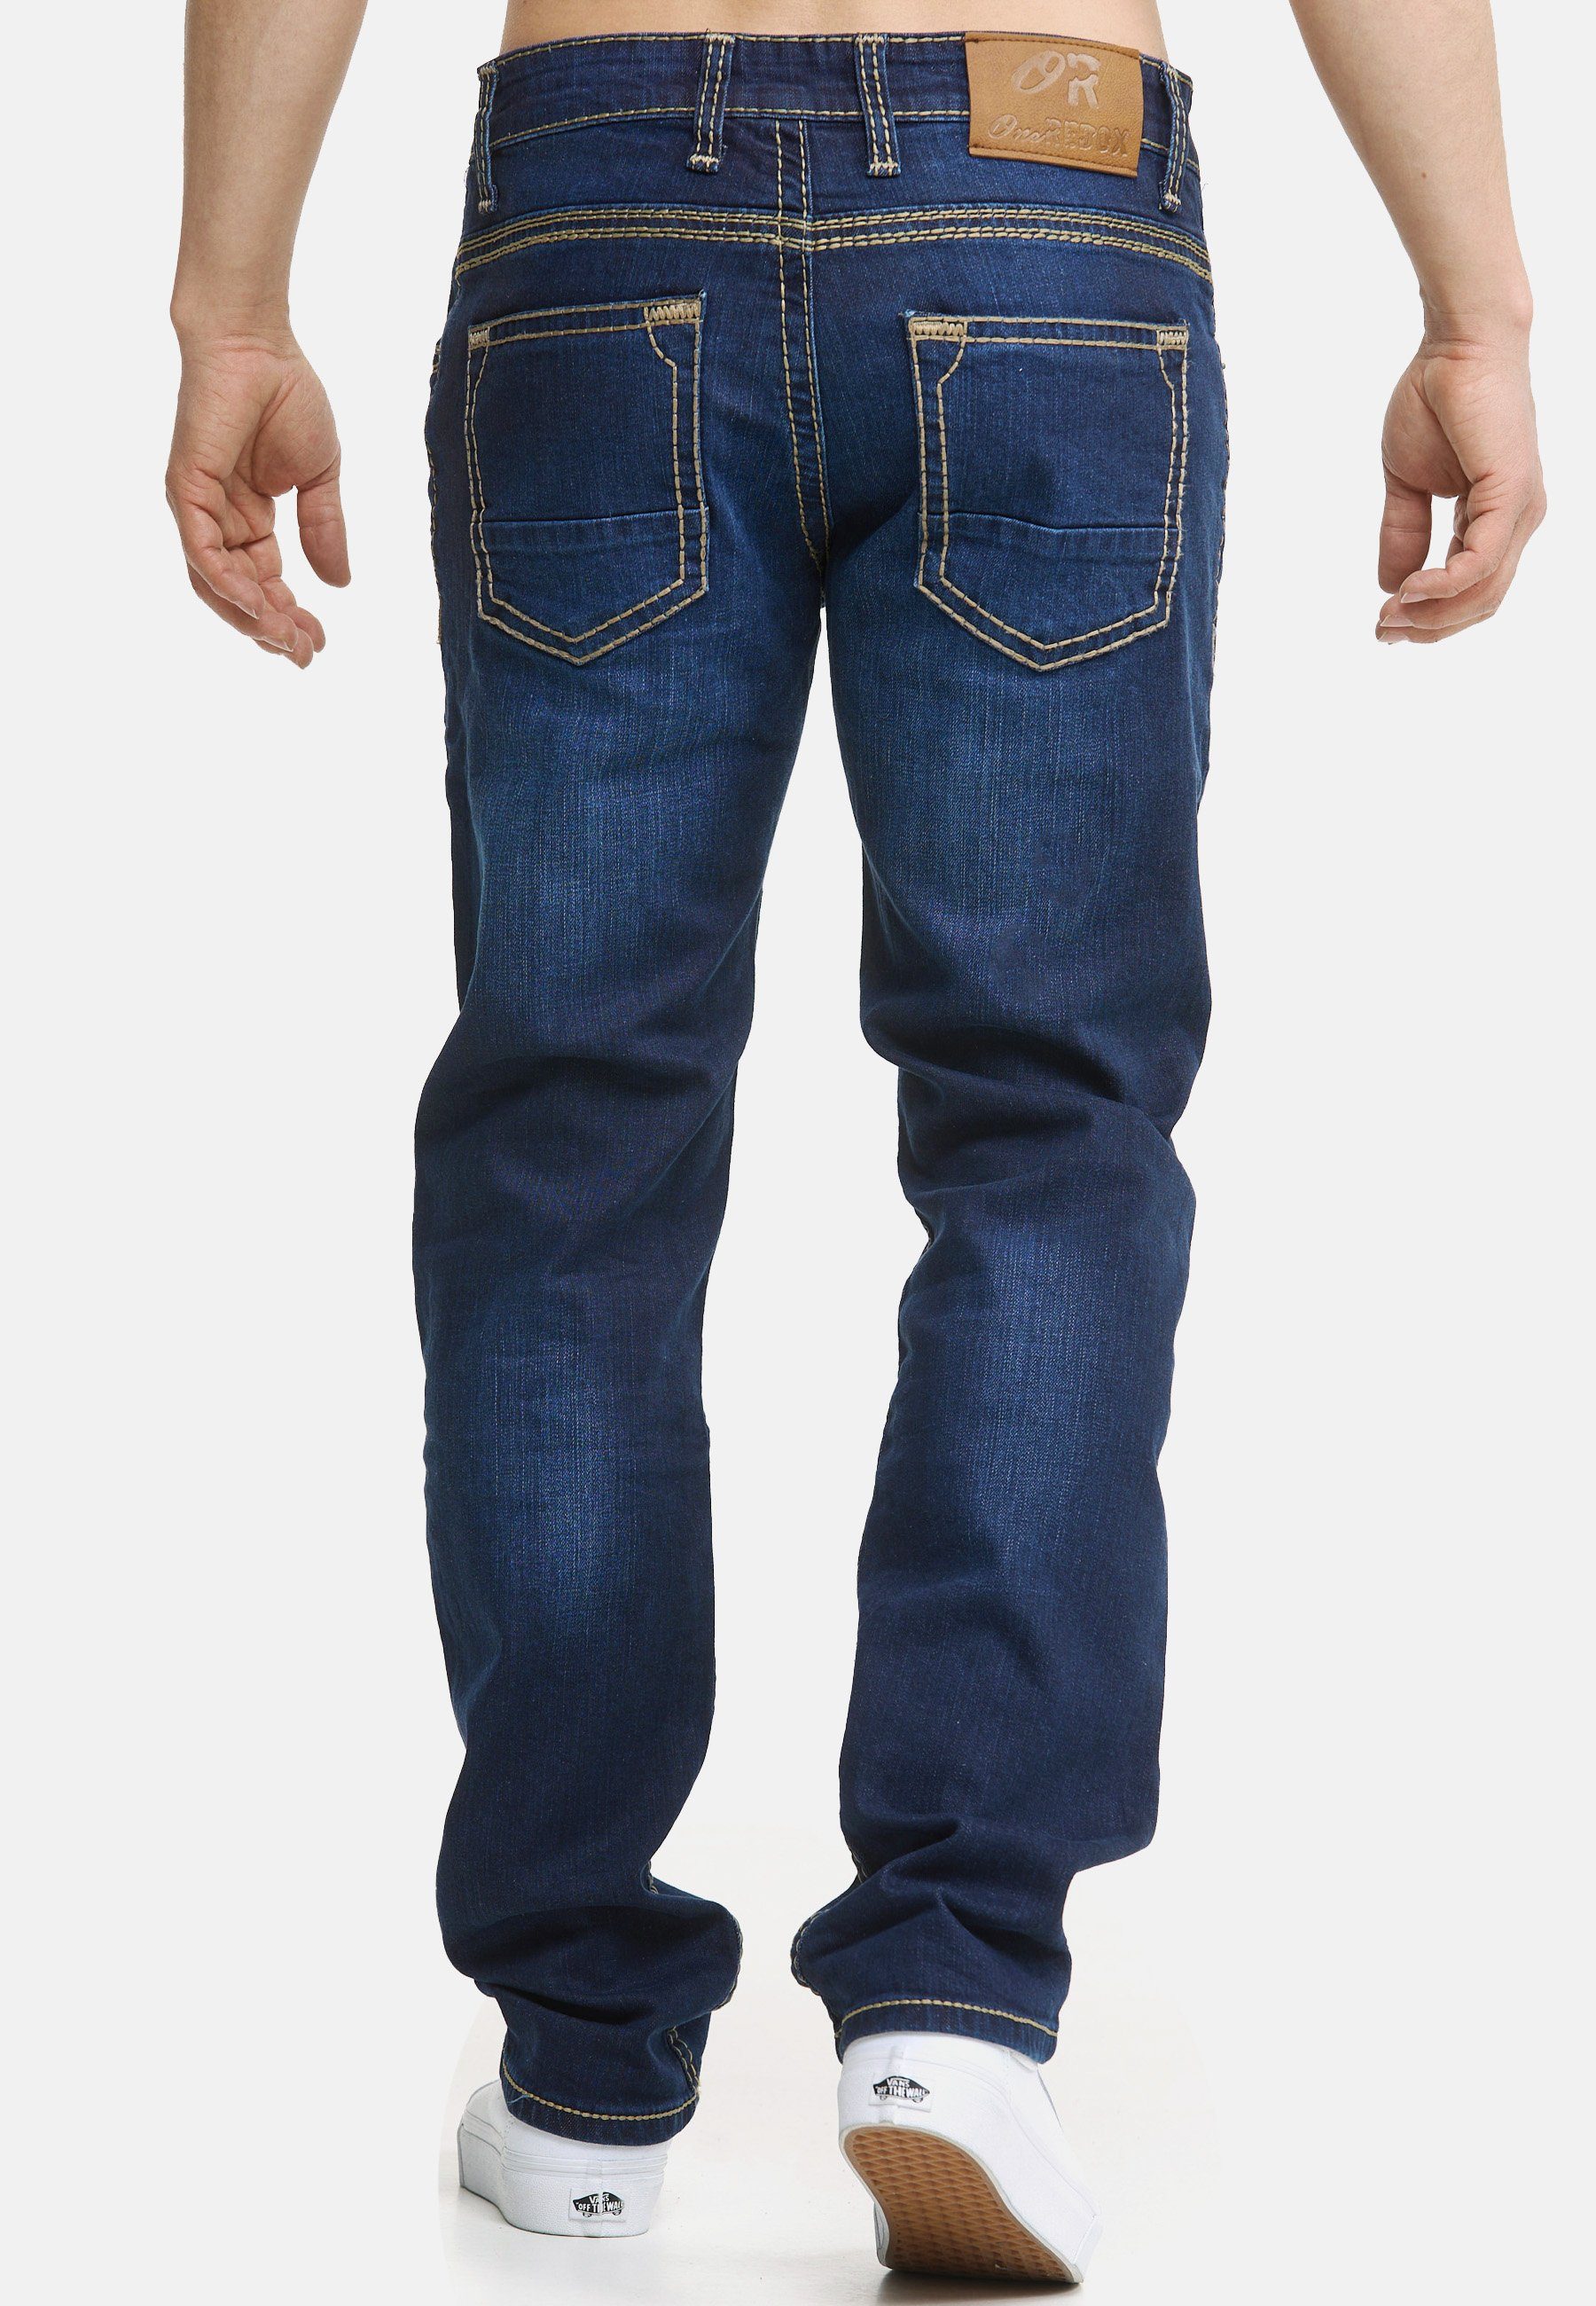 Herren Männer Code47 Pocket 907 Code47 Bootcut Five Regular Hose Denim Jeans Regular-fit-Jeans Fit blue